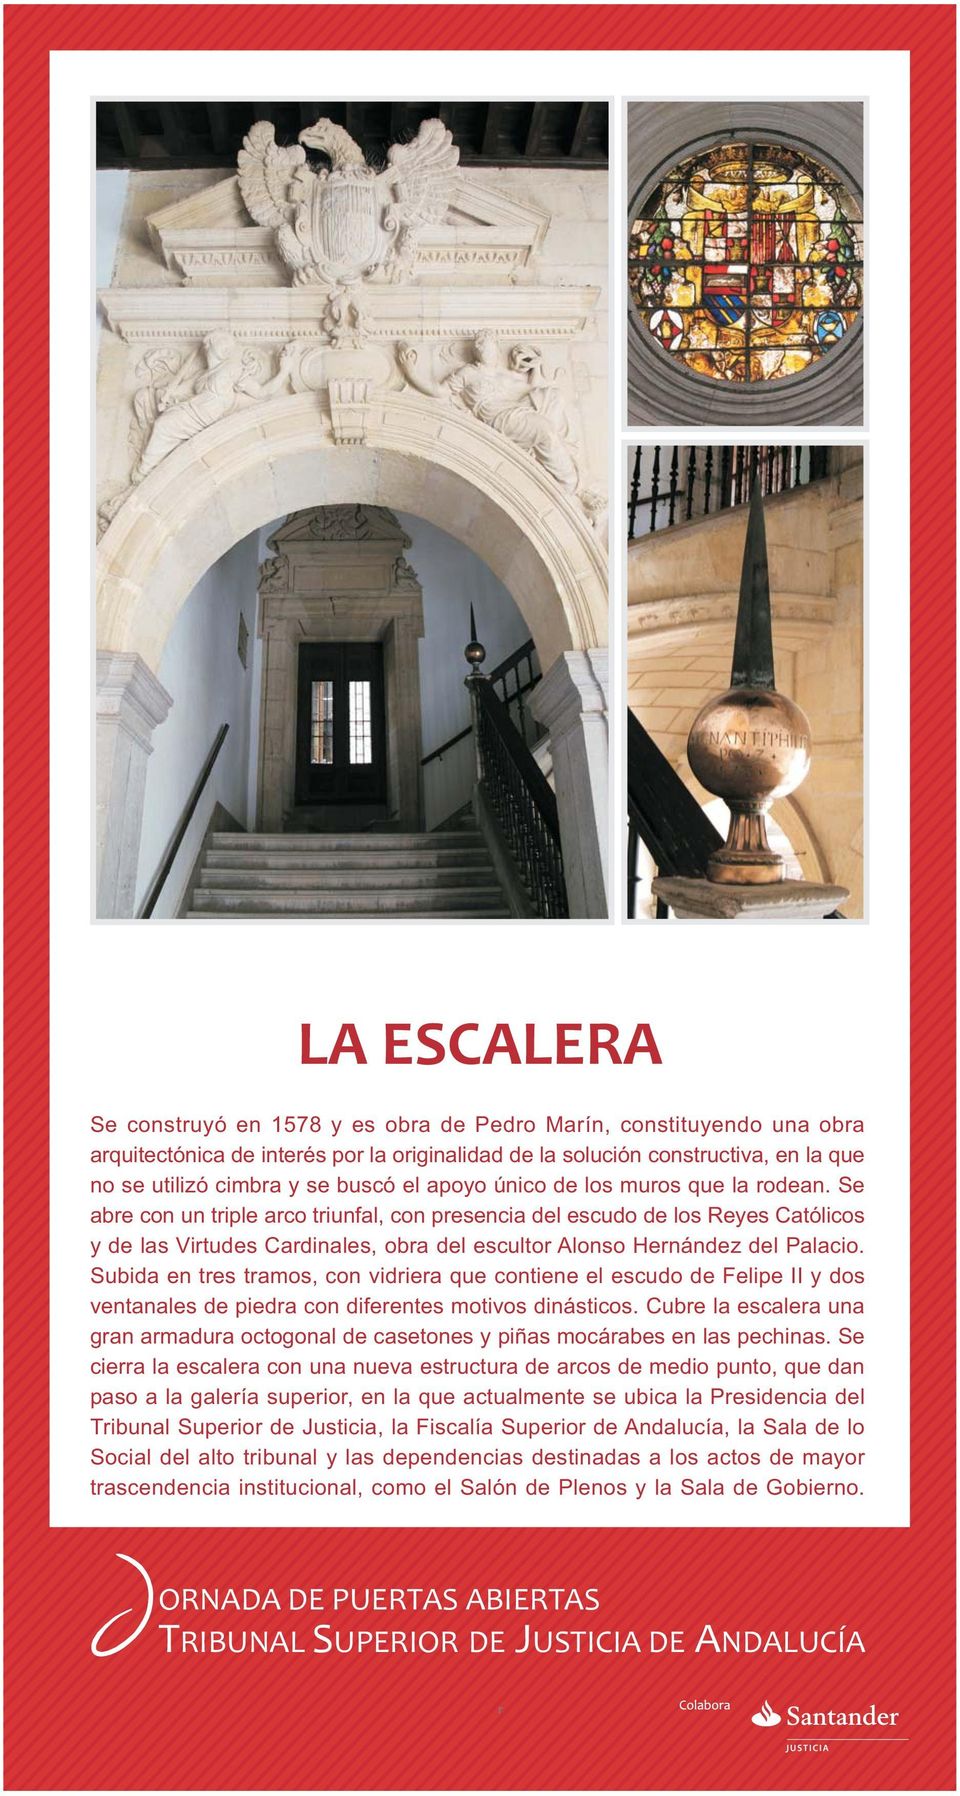 Se abre con un triple arco triunfal, con presencia del escudo de los Reyes Católicos y de las Virtudes Cardinales, obra del escultor Alonso Hernández del Palacio.